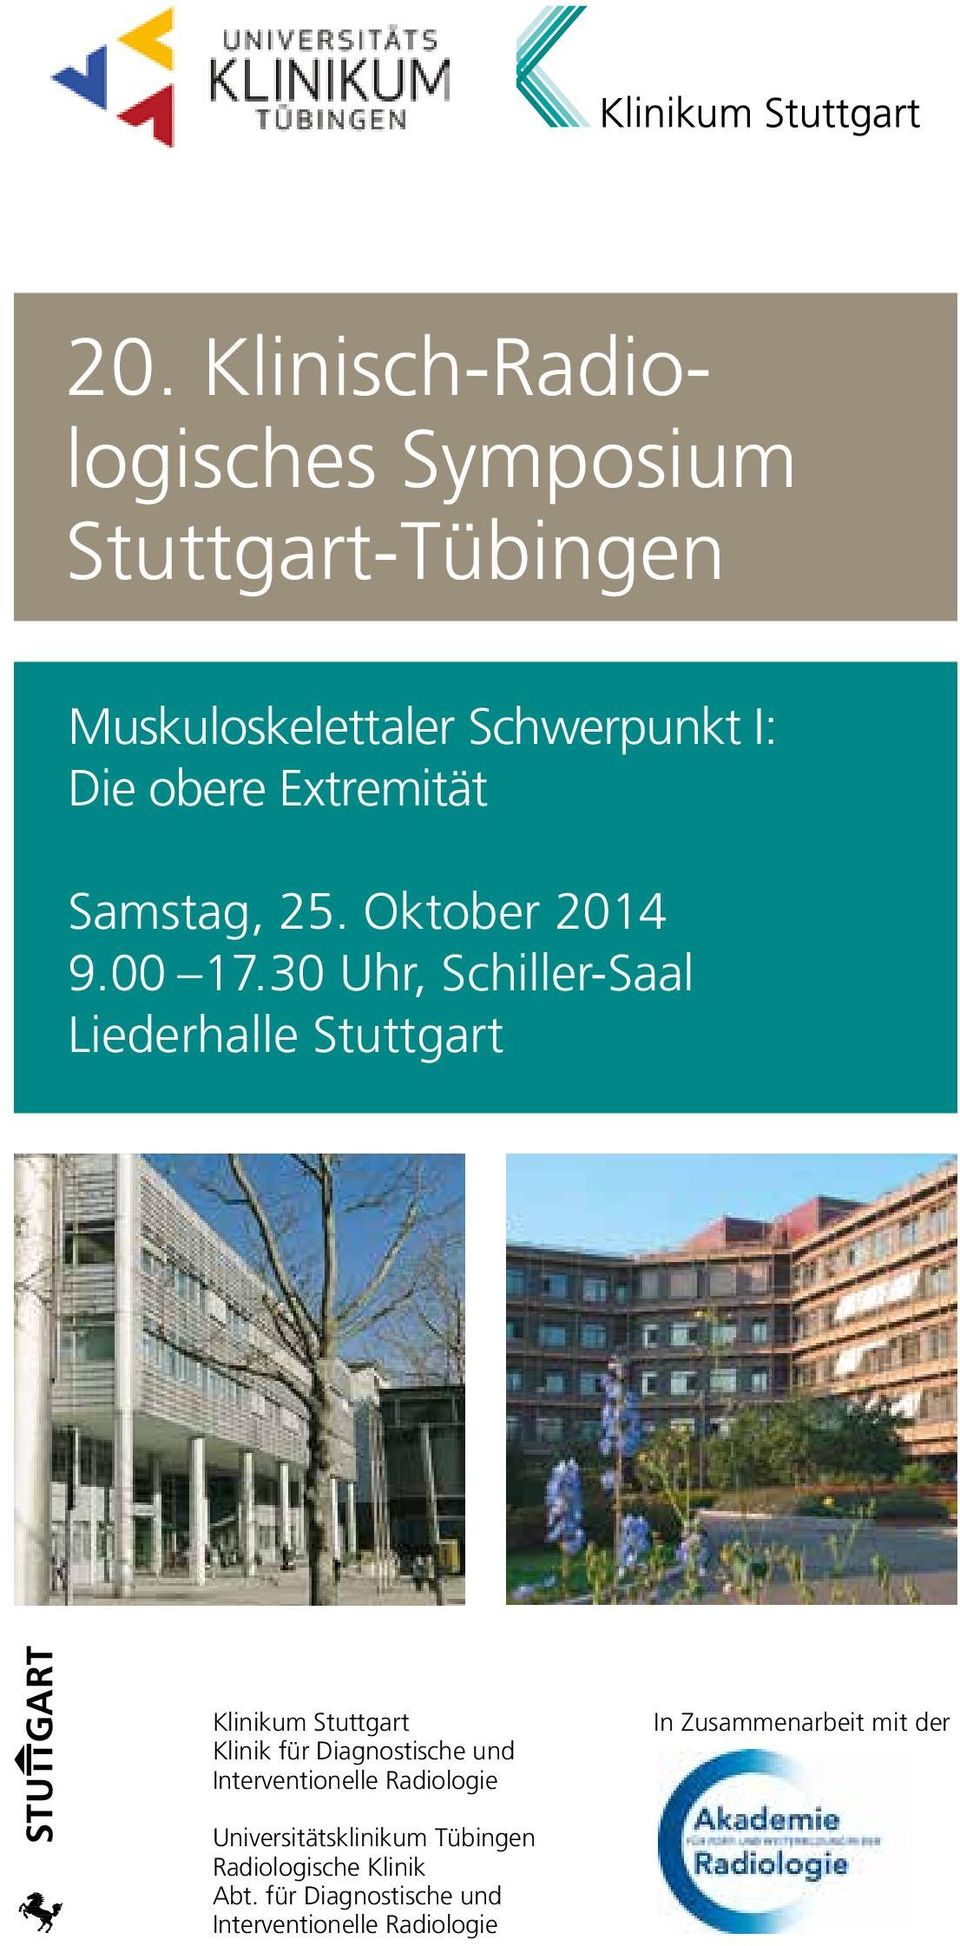 30 Uhr, Schiller-Saal Liederhalle Stuttgart Klinikum Stuttgart Klinik für